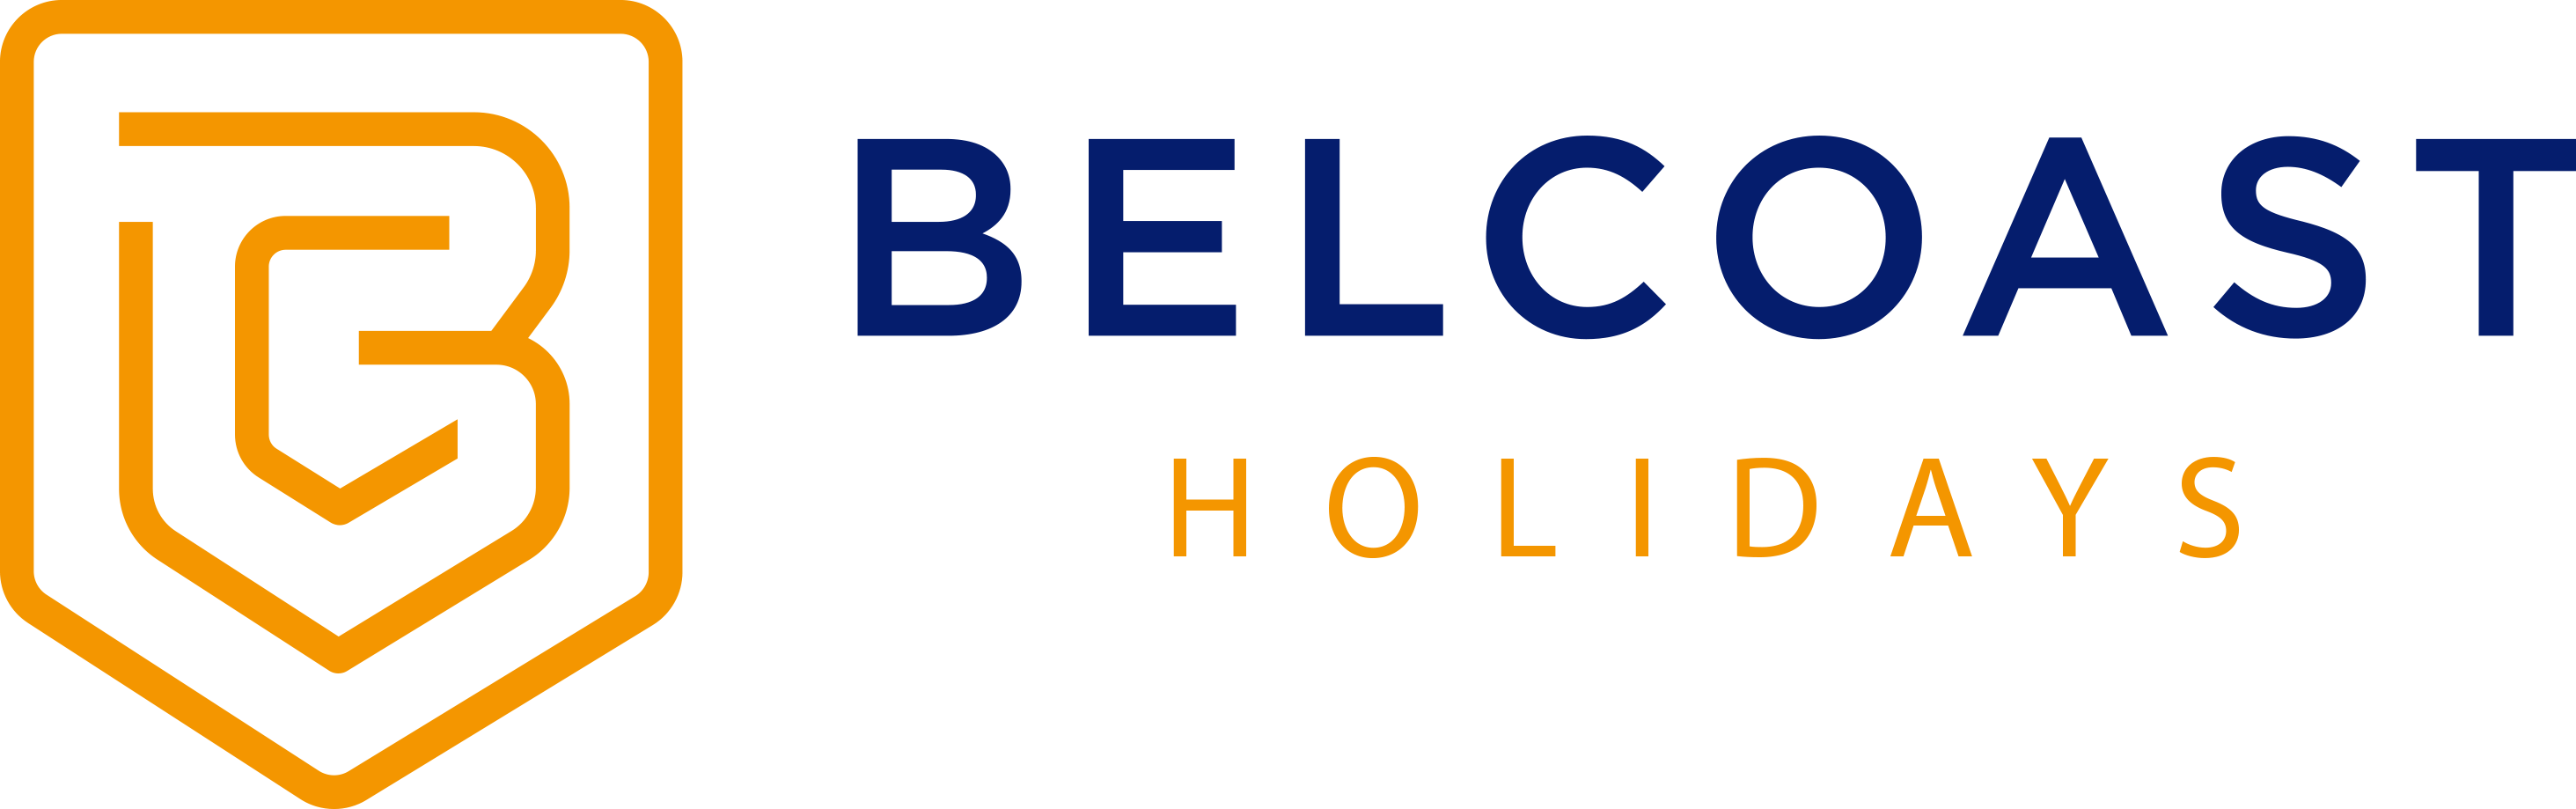 Belcoast Holidays